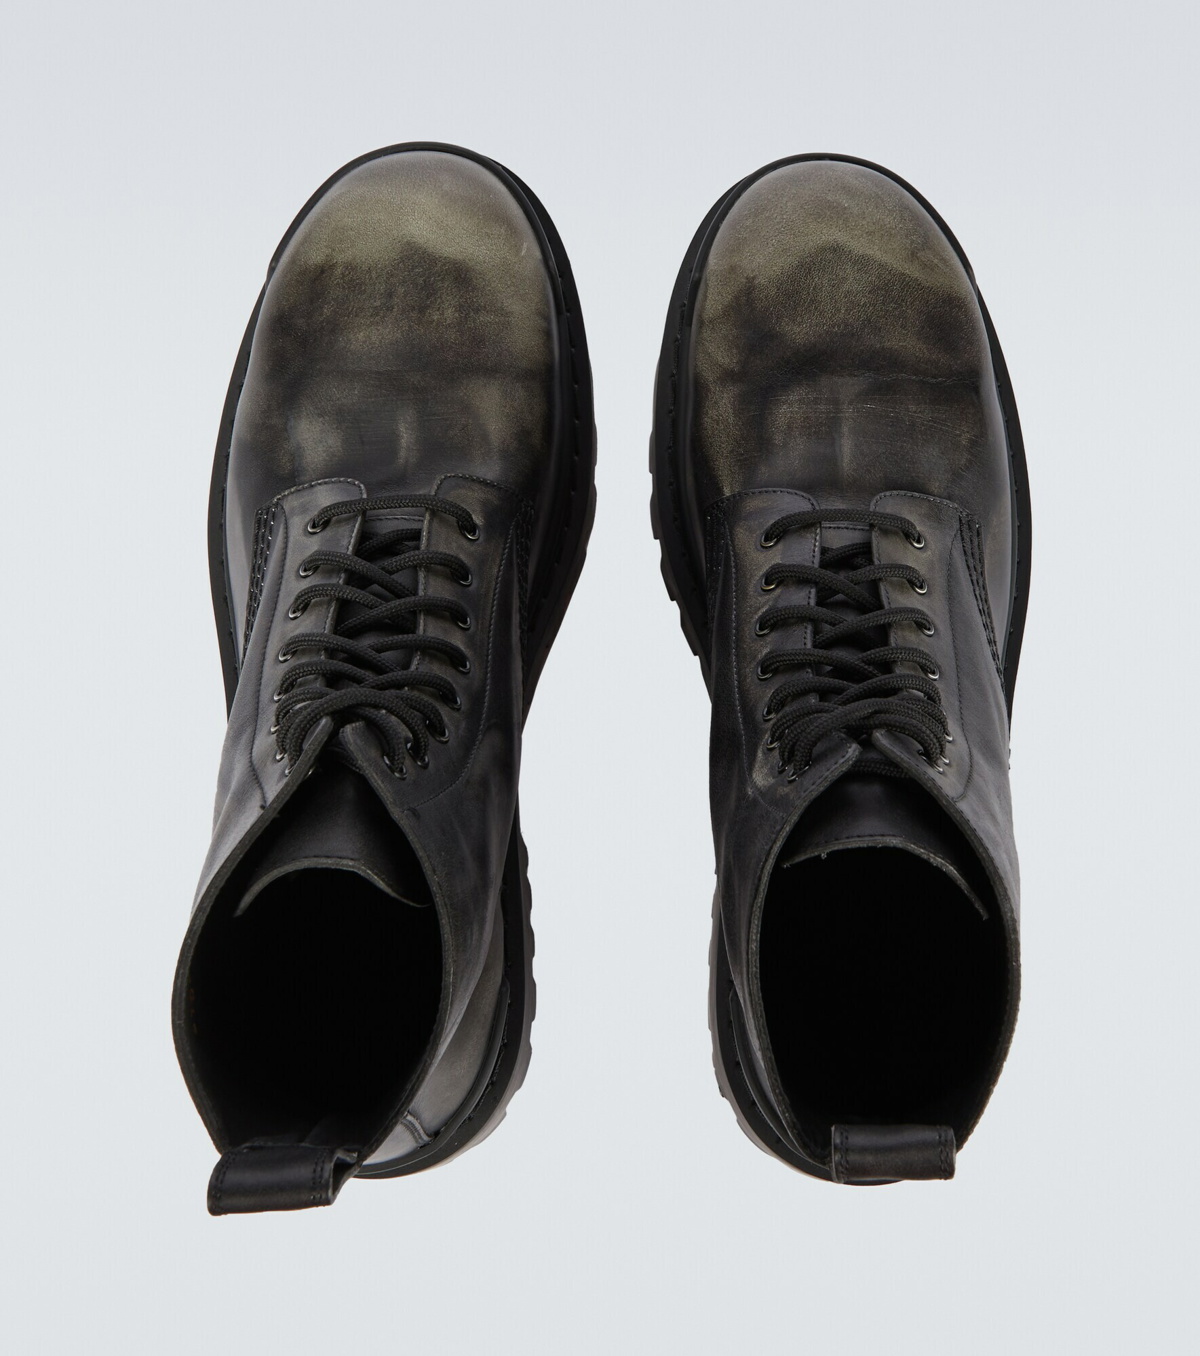 Balenciaga - Strike leather boots Balenciaga